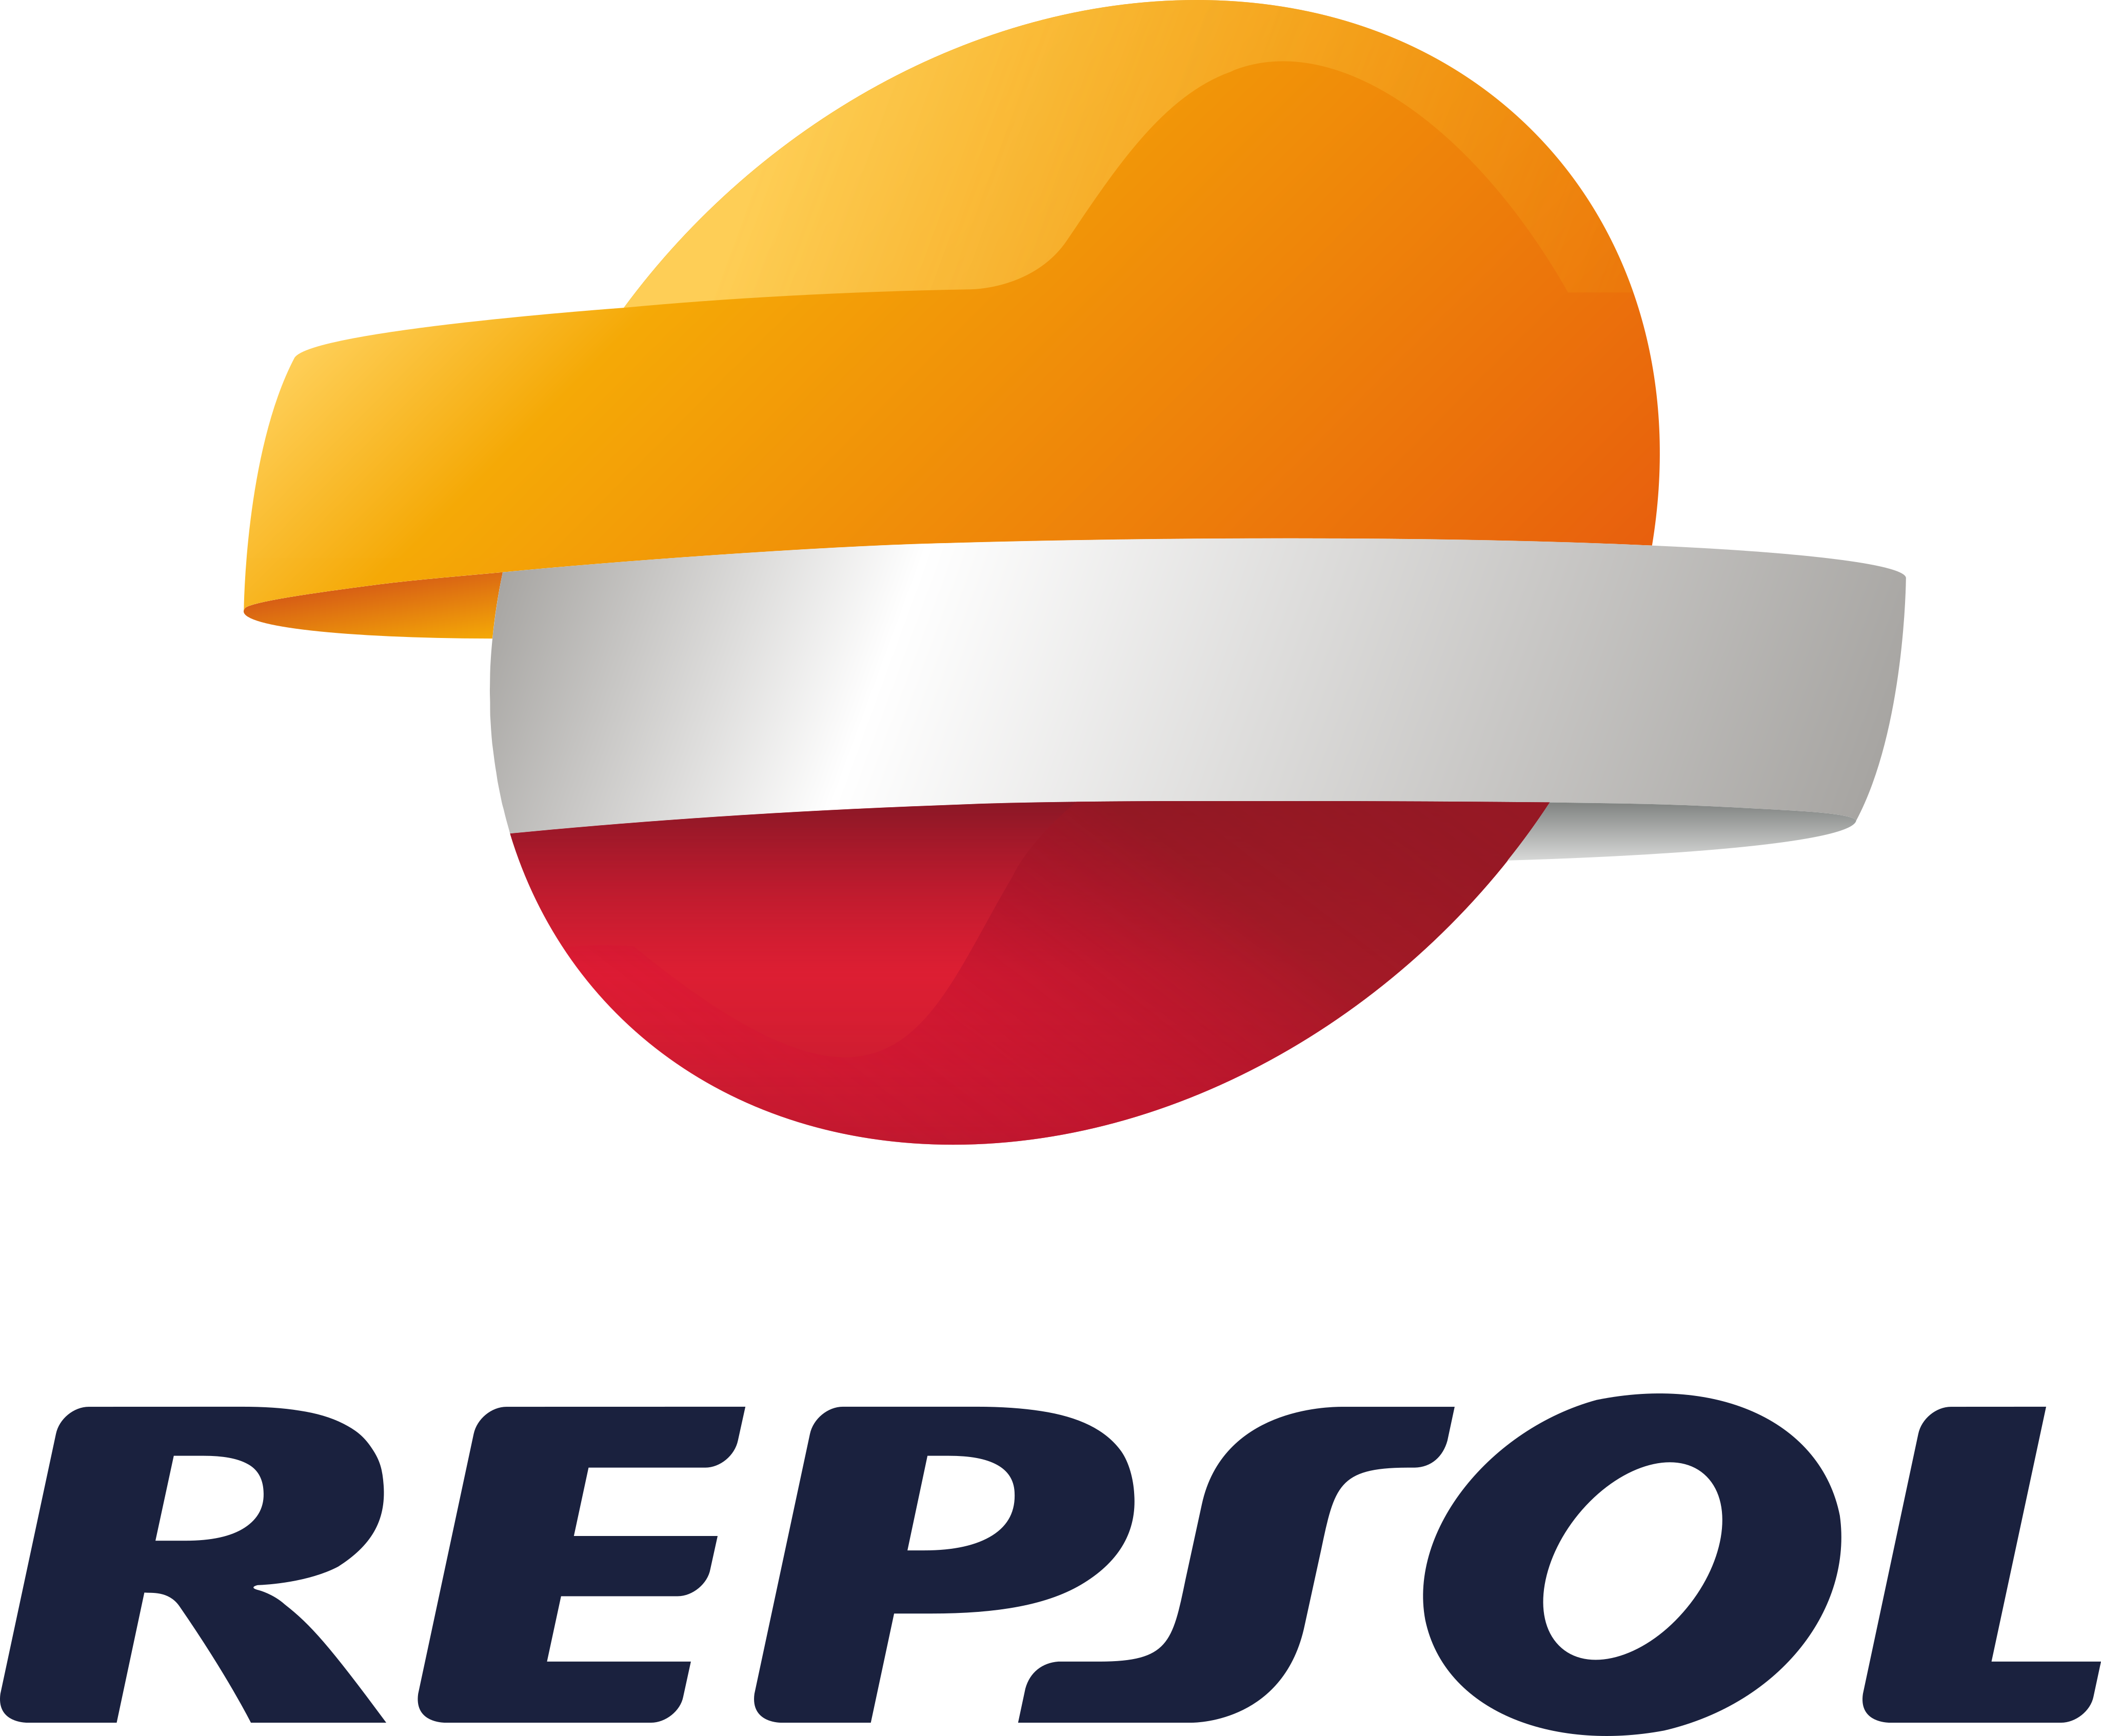 Logo Repsol Png - KibrisPDR